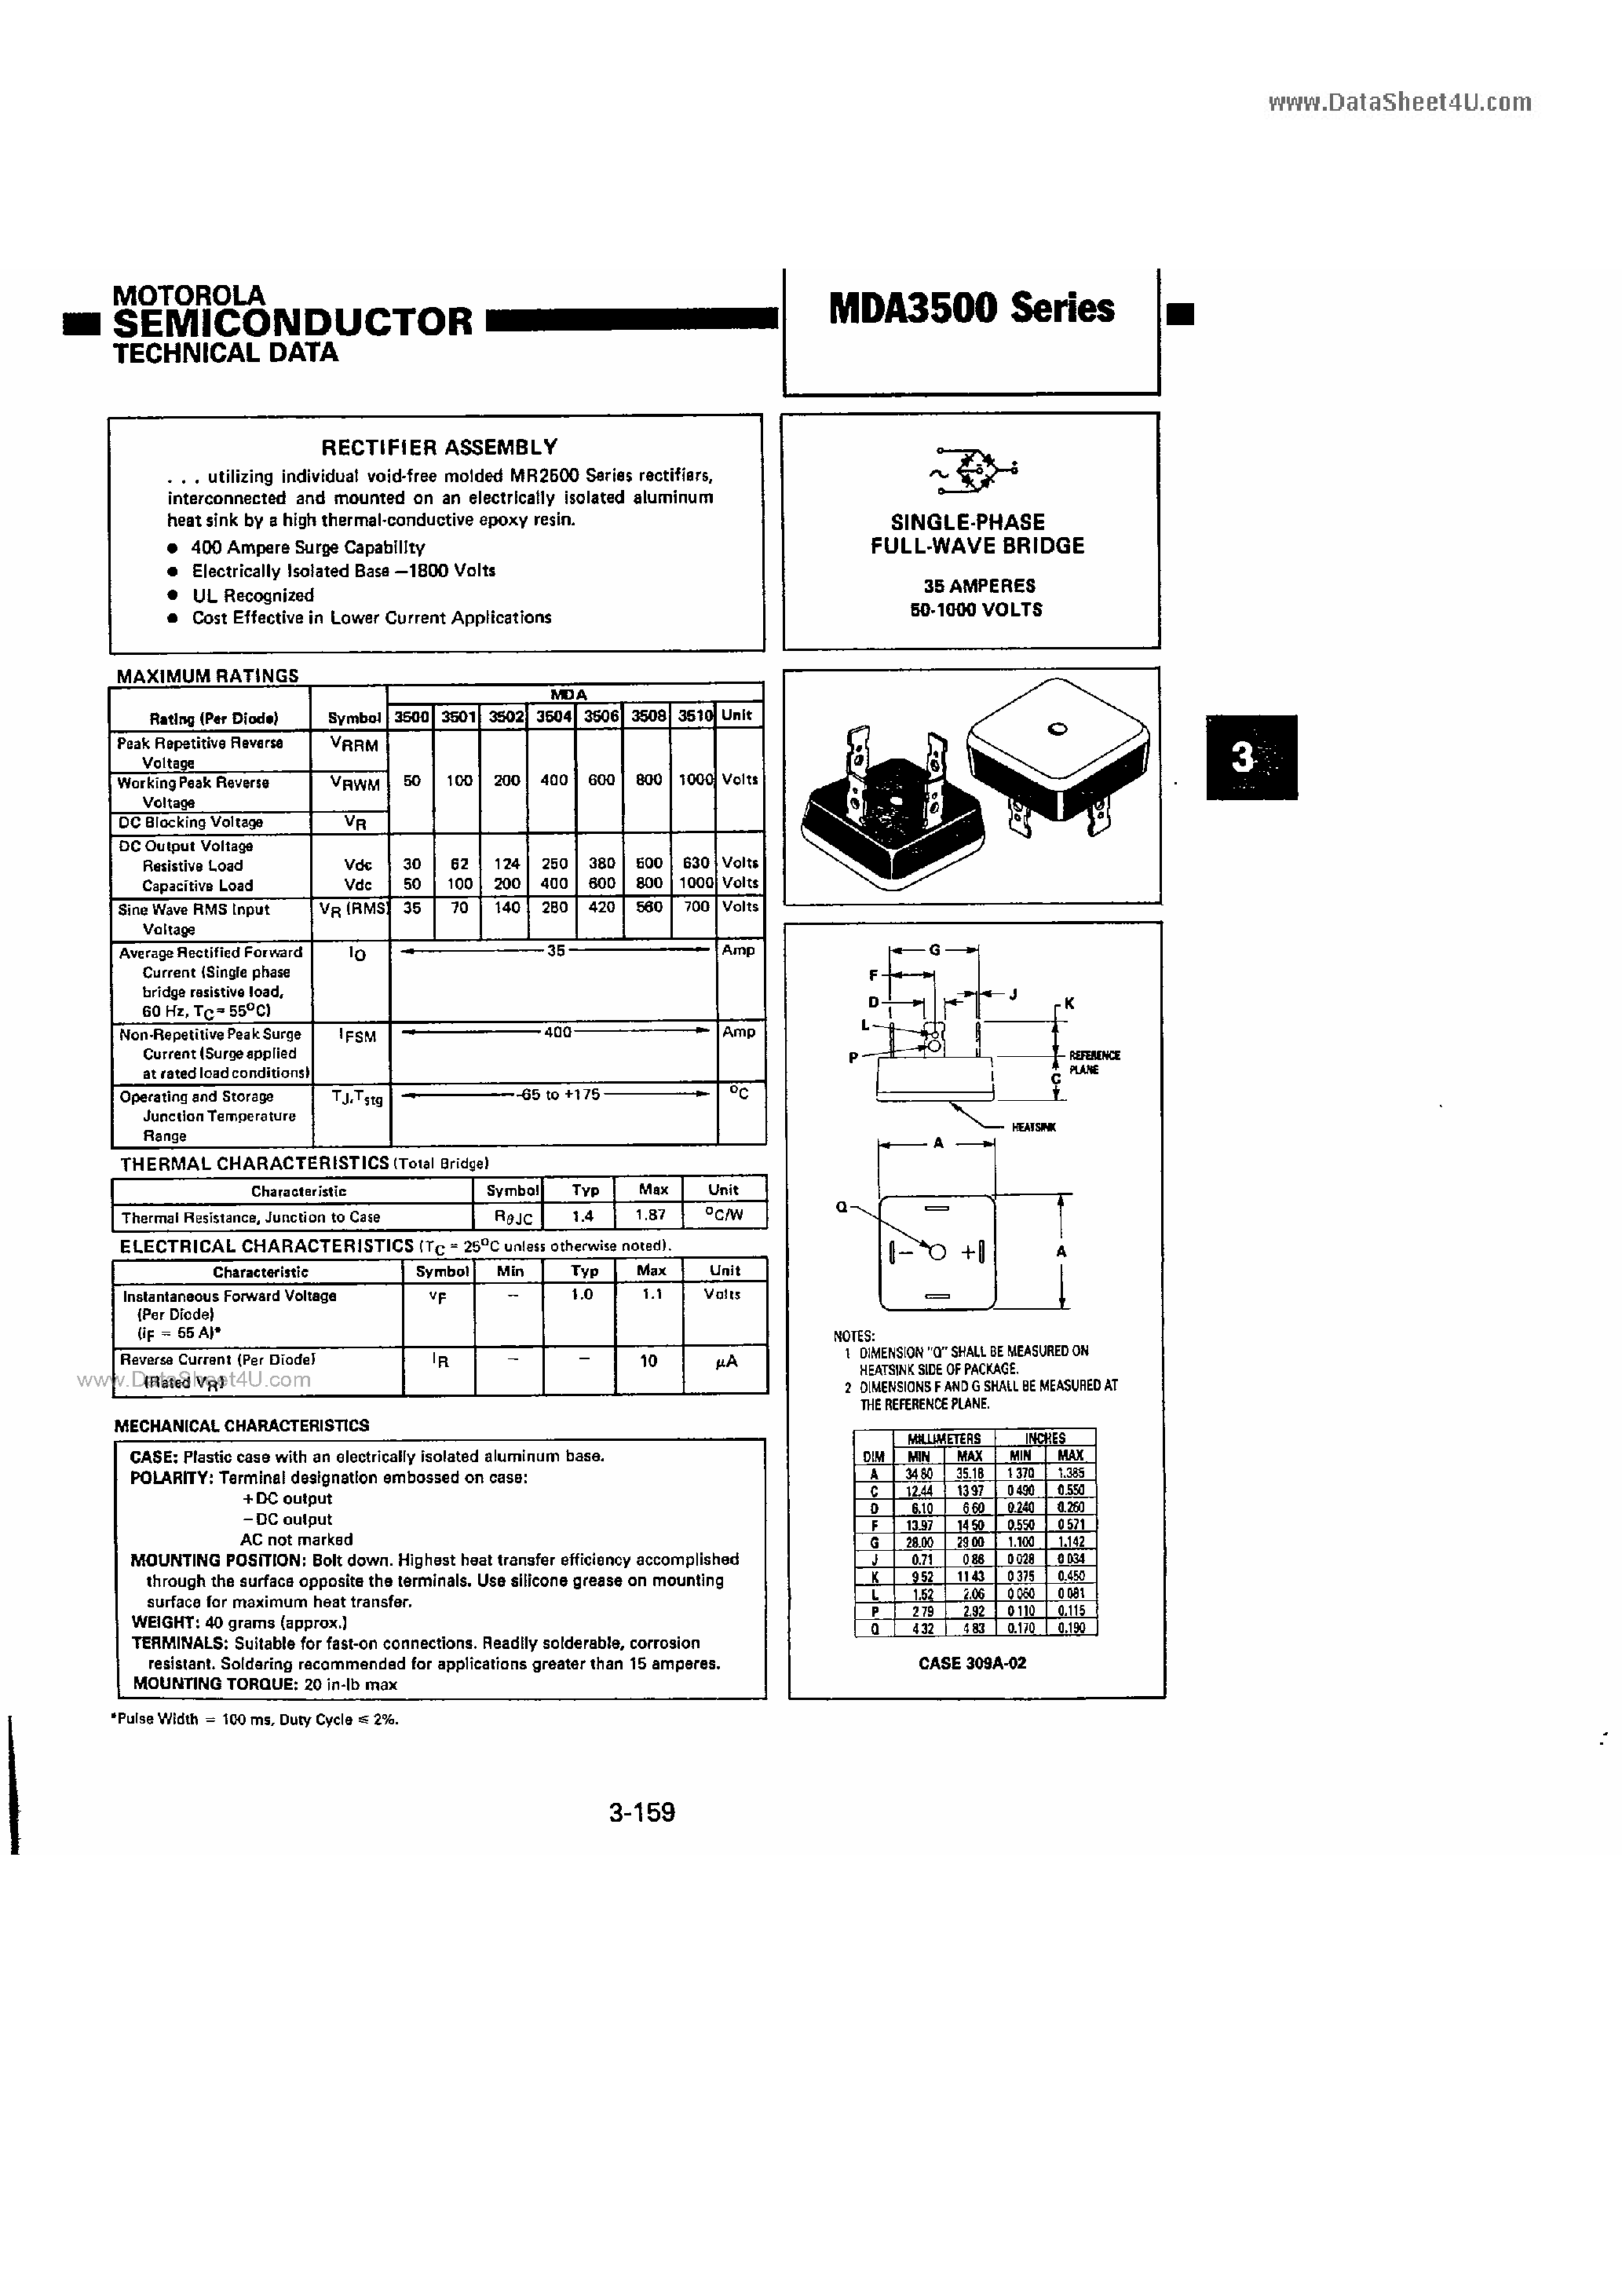 Datasheet MDA3500 - SINGLE-PHASE FULL-WAVE BRIDGE page 1